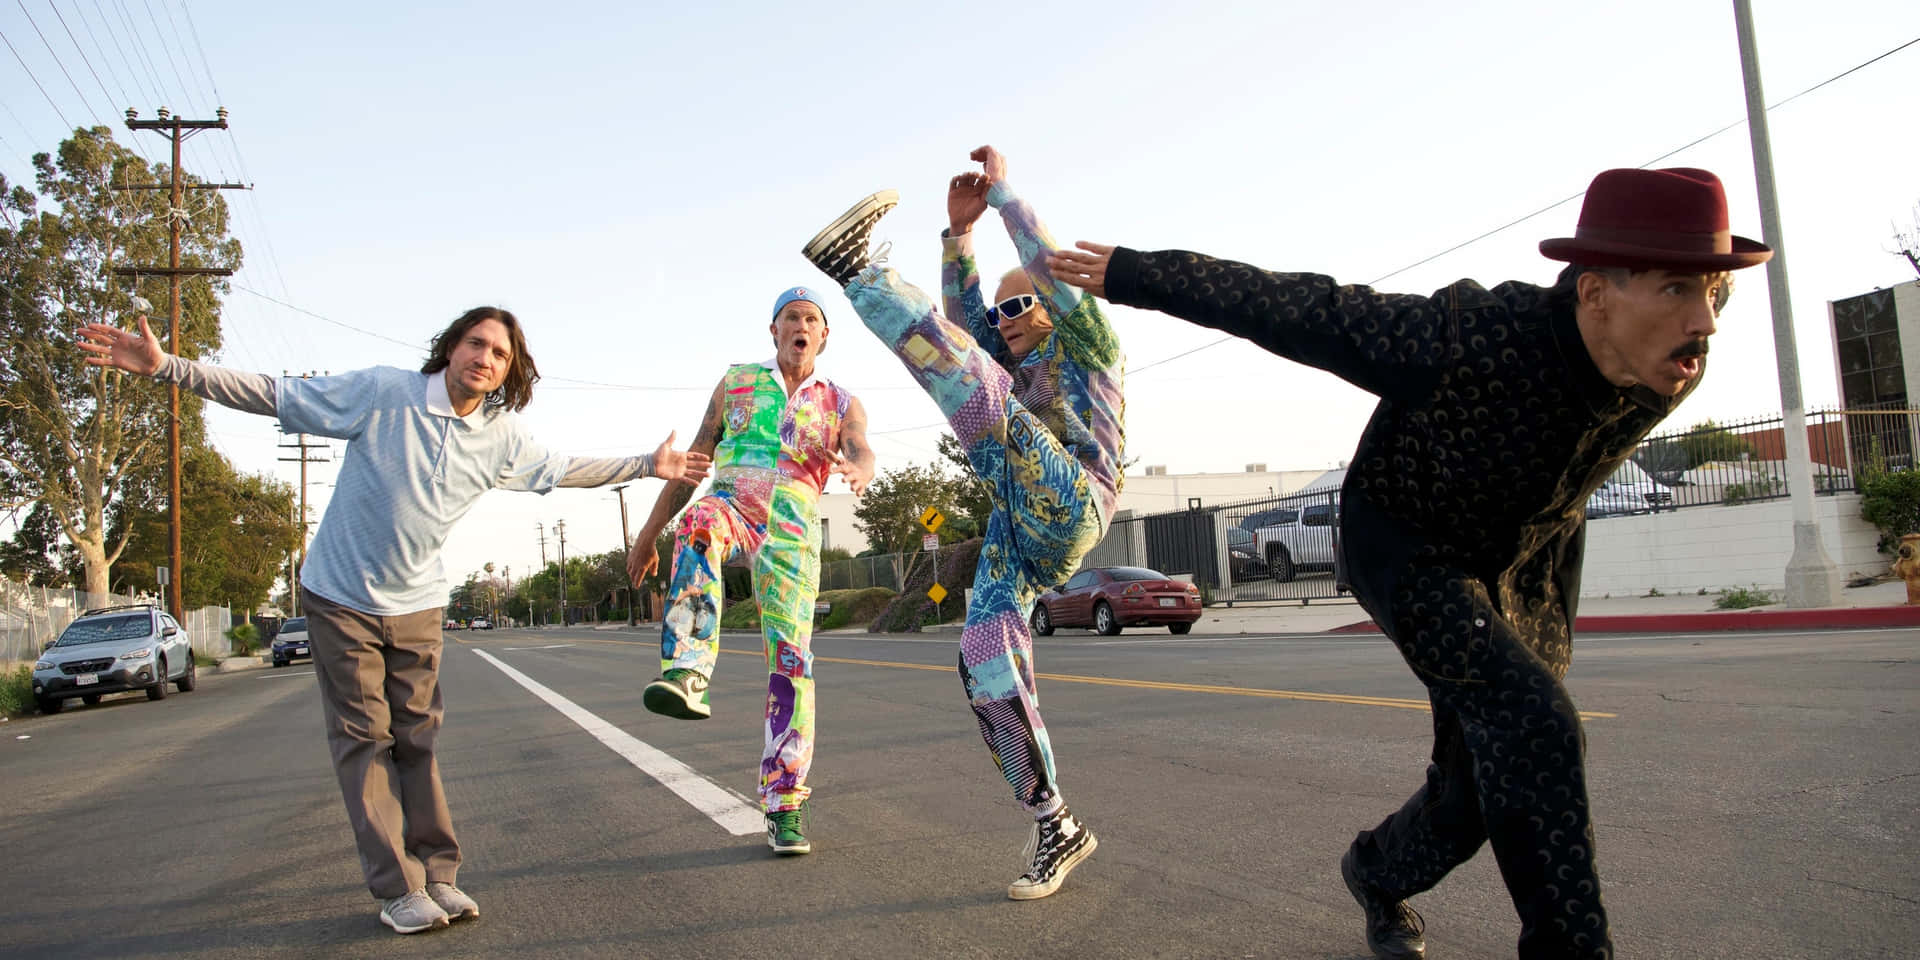 Einegruppe Menschen In Bunten Kleidern Führt Einen Stunt Vor. Wallpaper